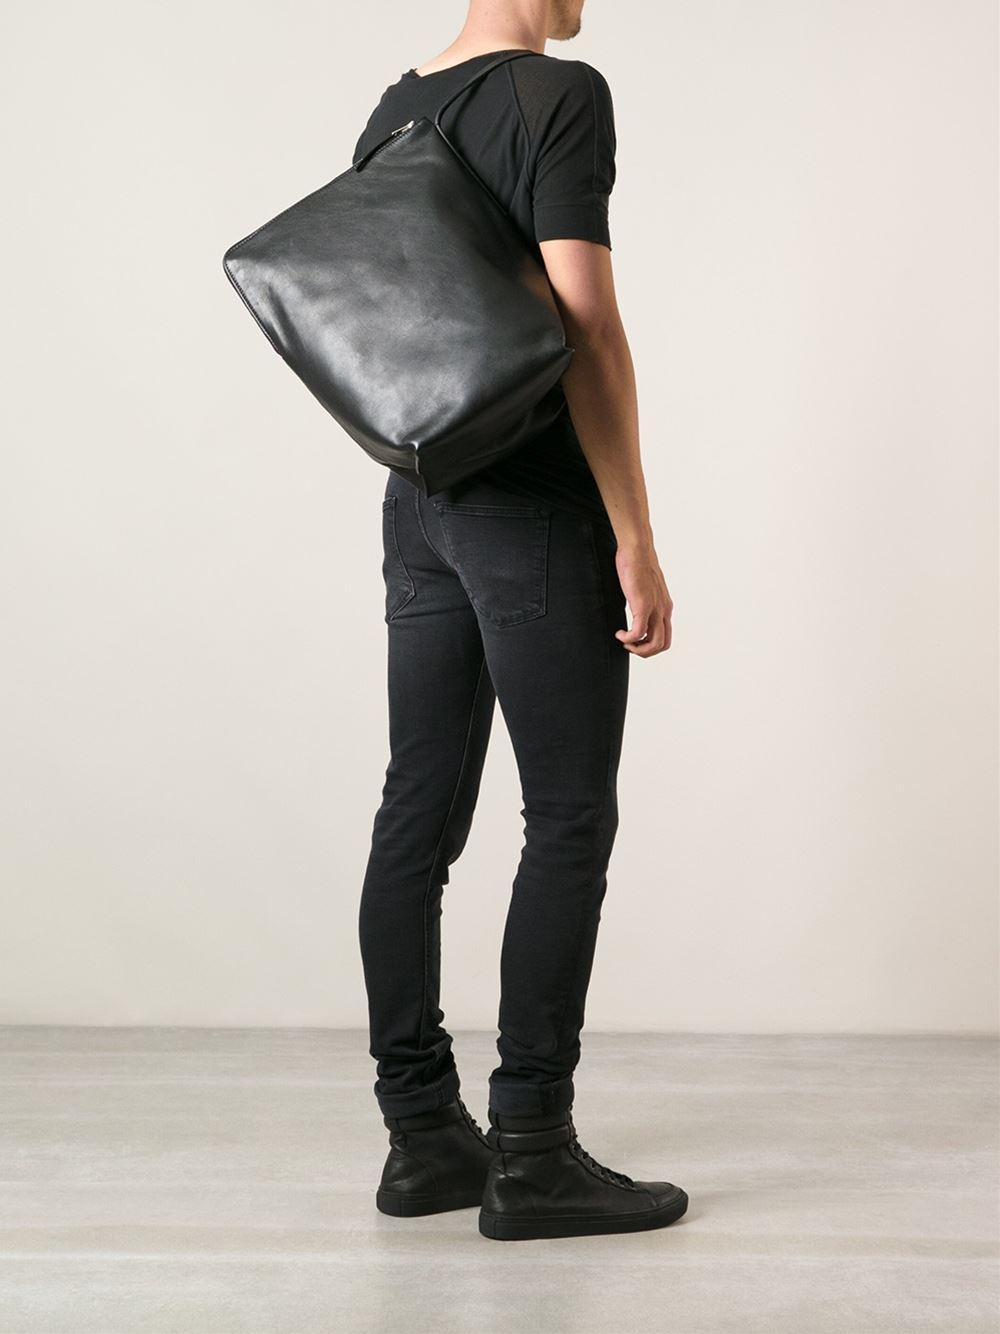 Lyst - Rick Owens Single Strap Shoulder Bag in Black for Men